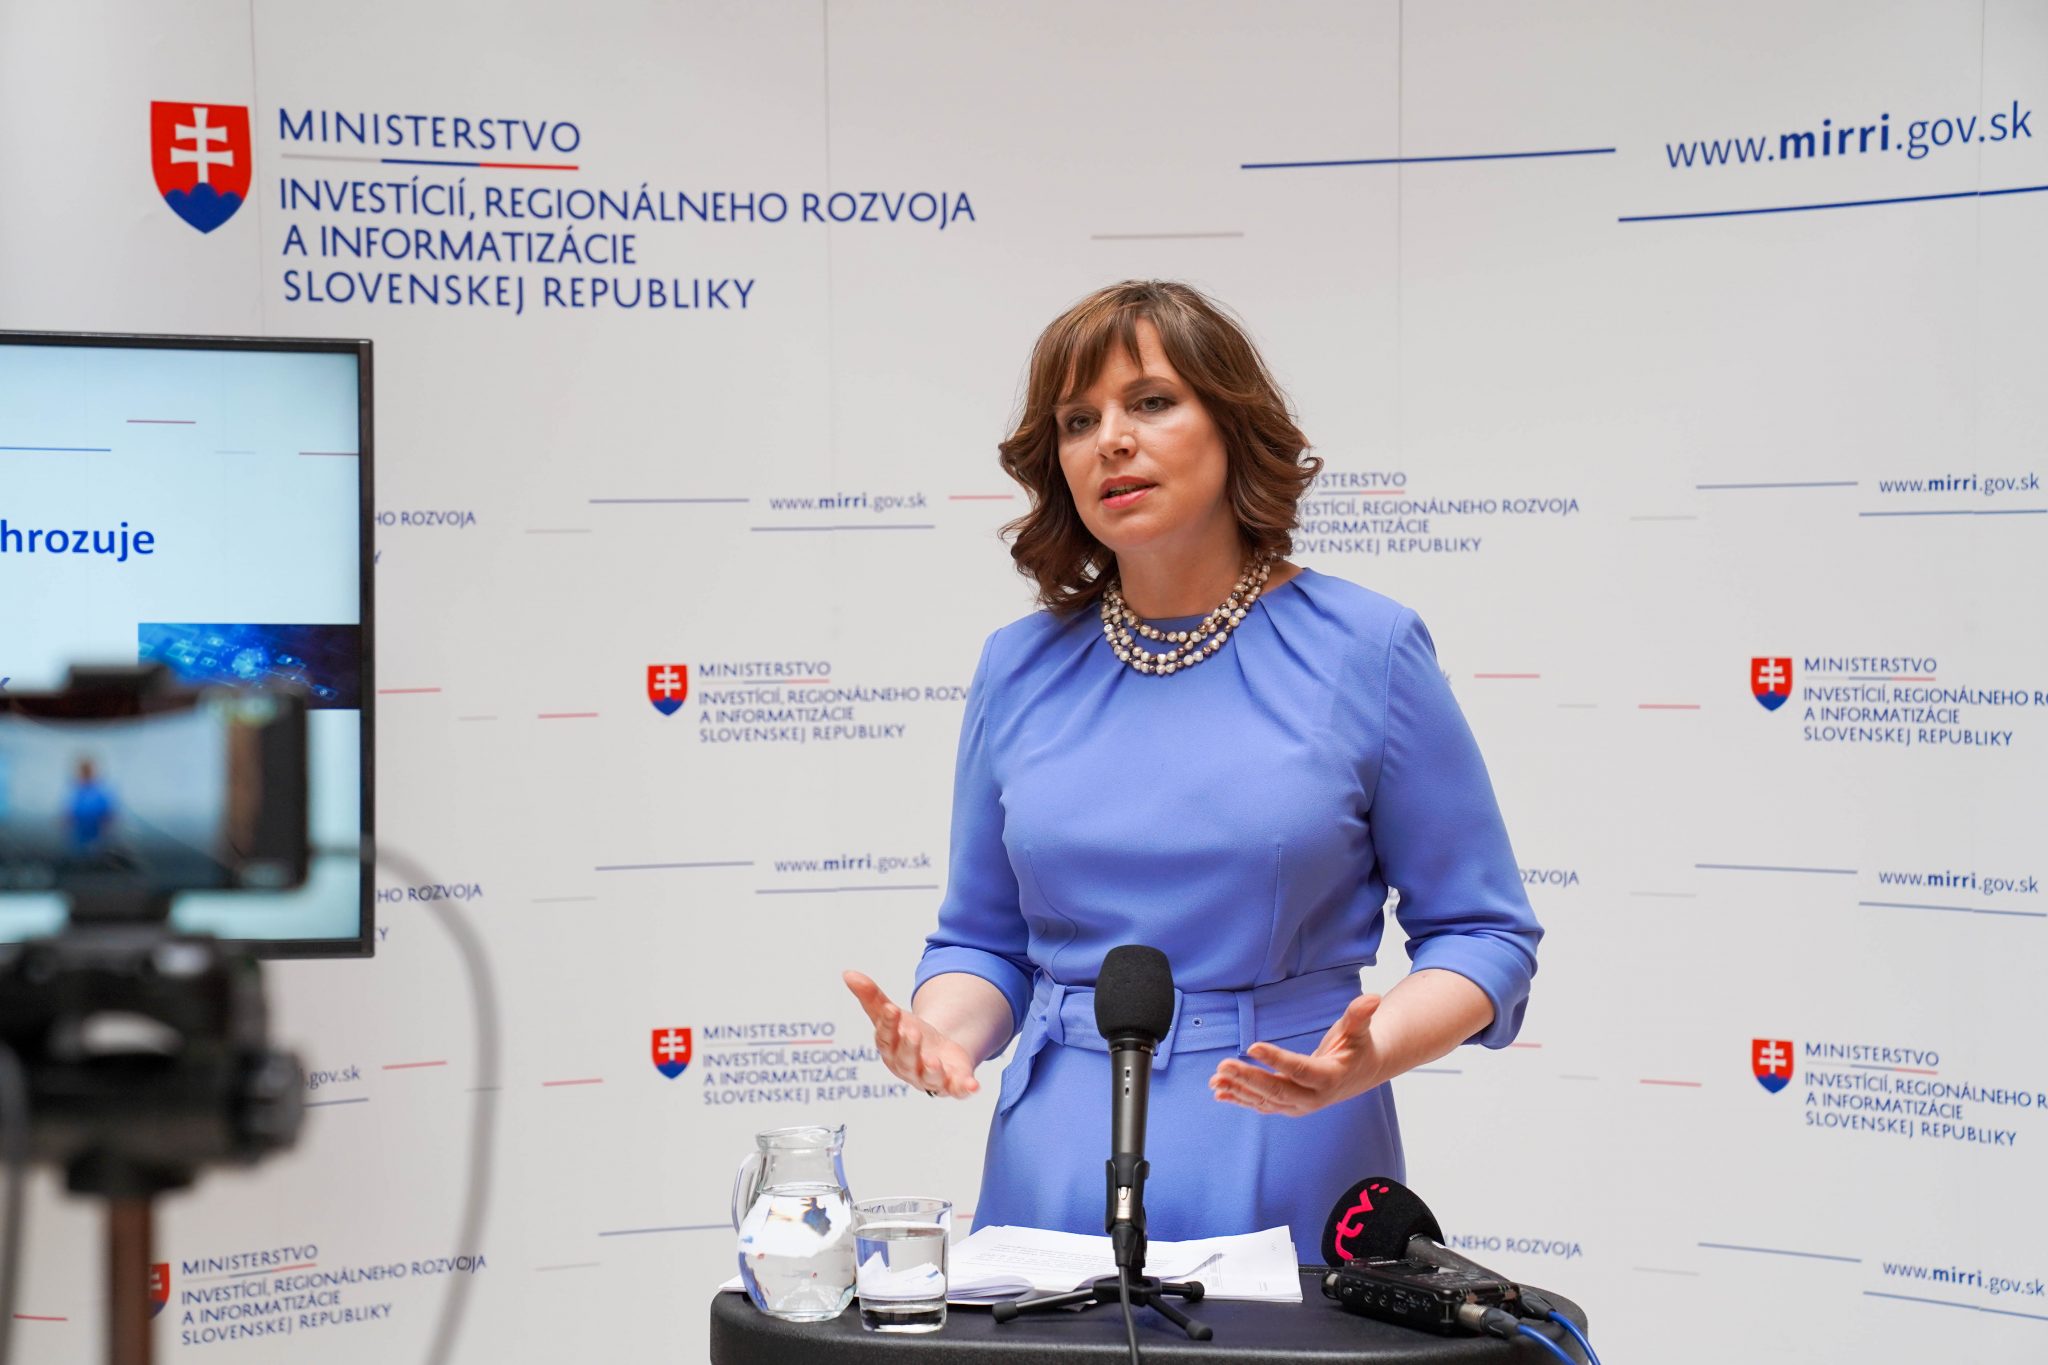 Vicepremiérka Remišová: Veľký úspech antibyrokratickej revolúcie – občanov sme odbremenili  už od 500 000 výpisov, ktoré nemuseli predkladať na úradoch